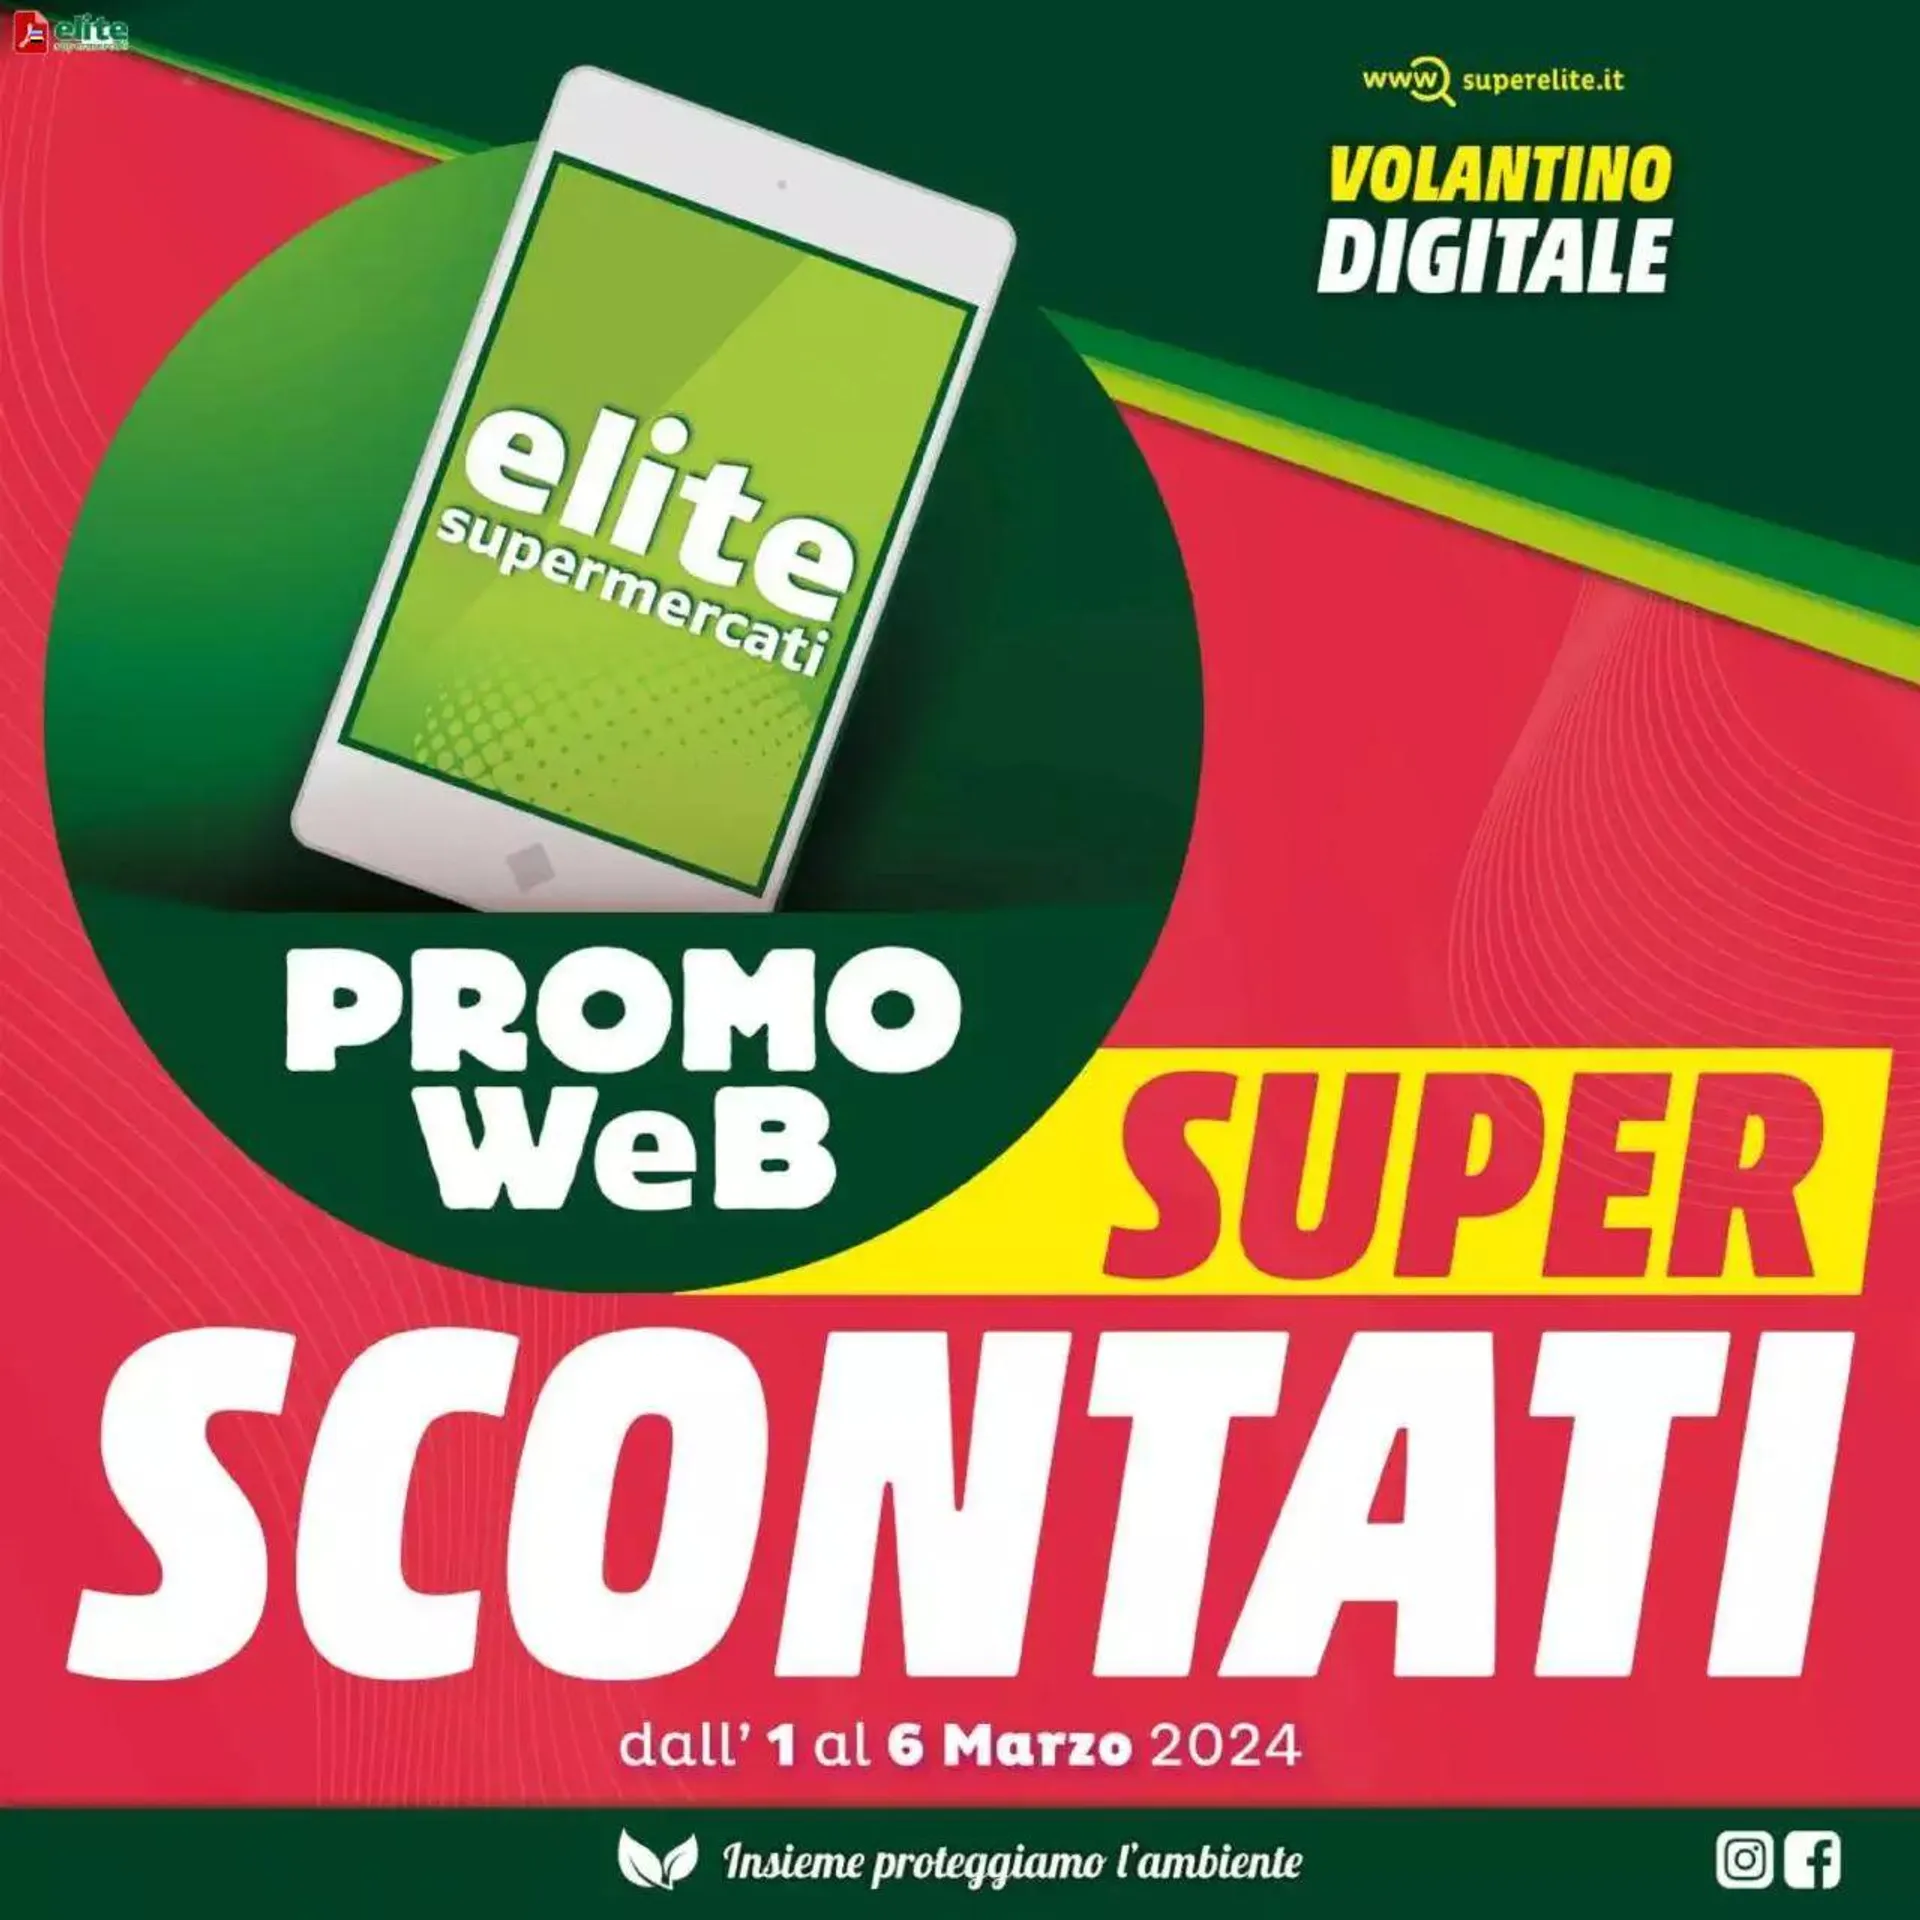 Elite Supermercati - Super Scontati da 1 marzo a 6 marzo di 2024 - Pagina del volantino 1